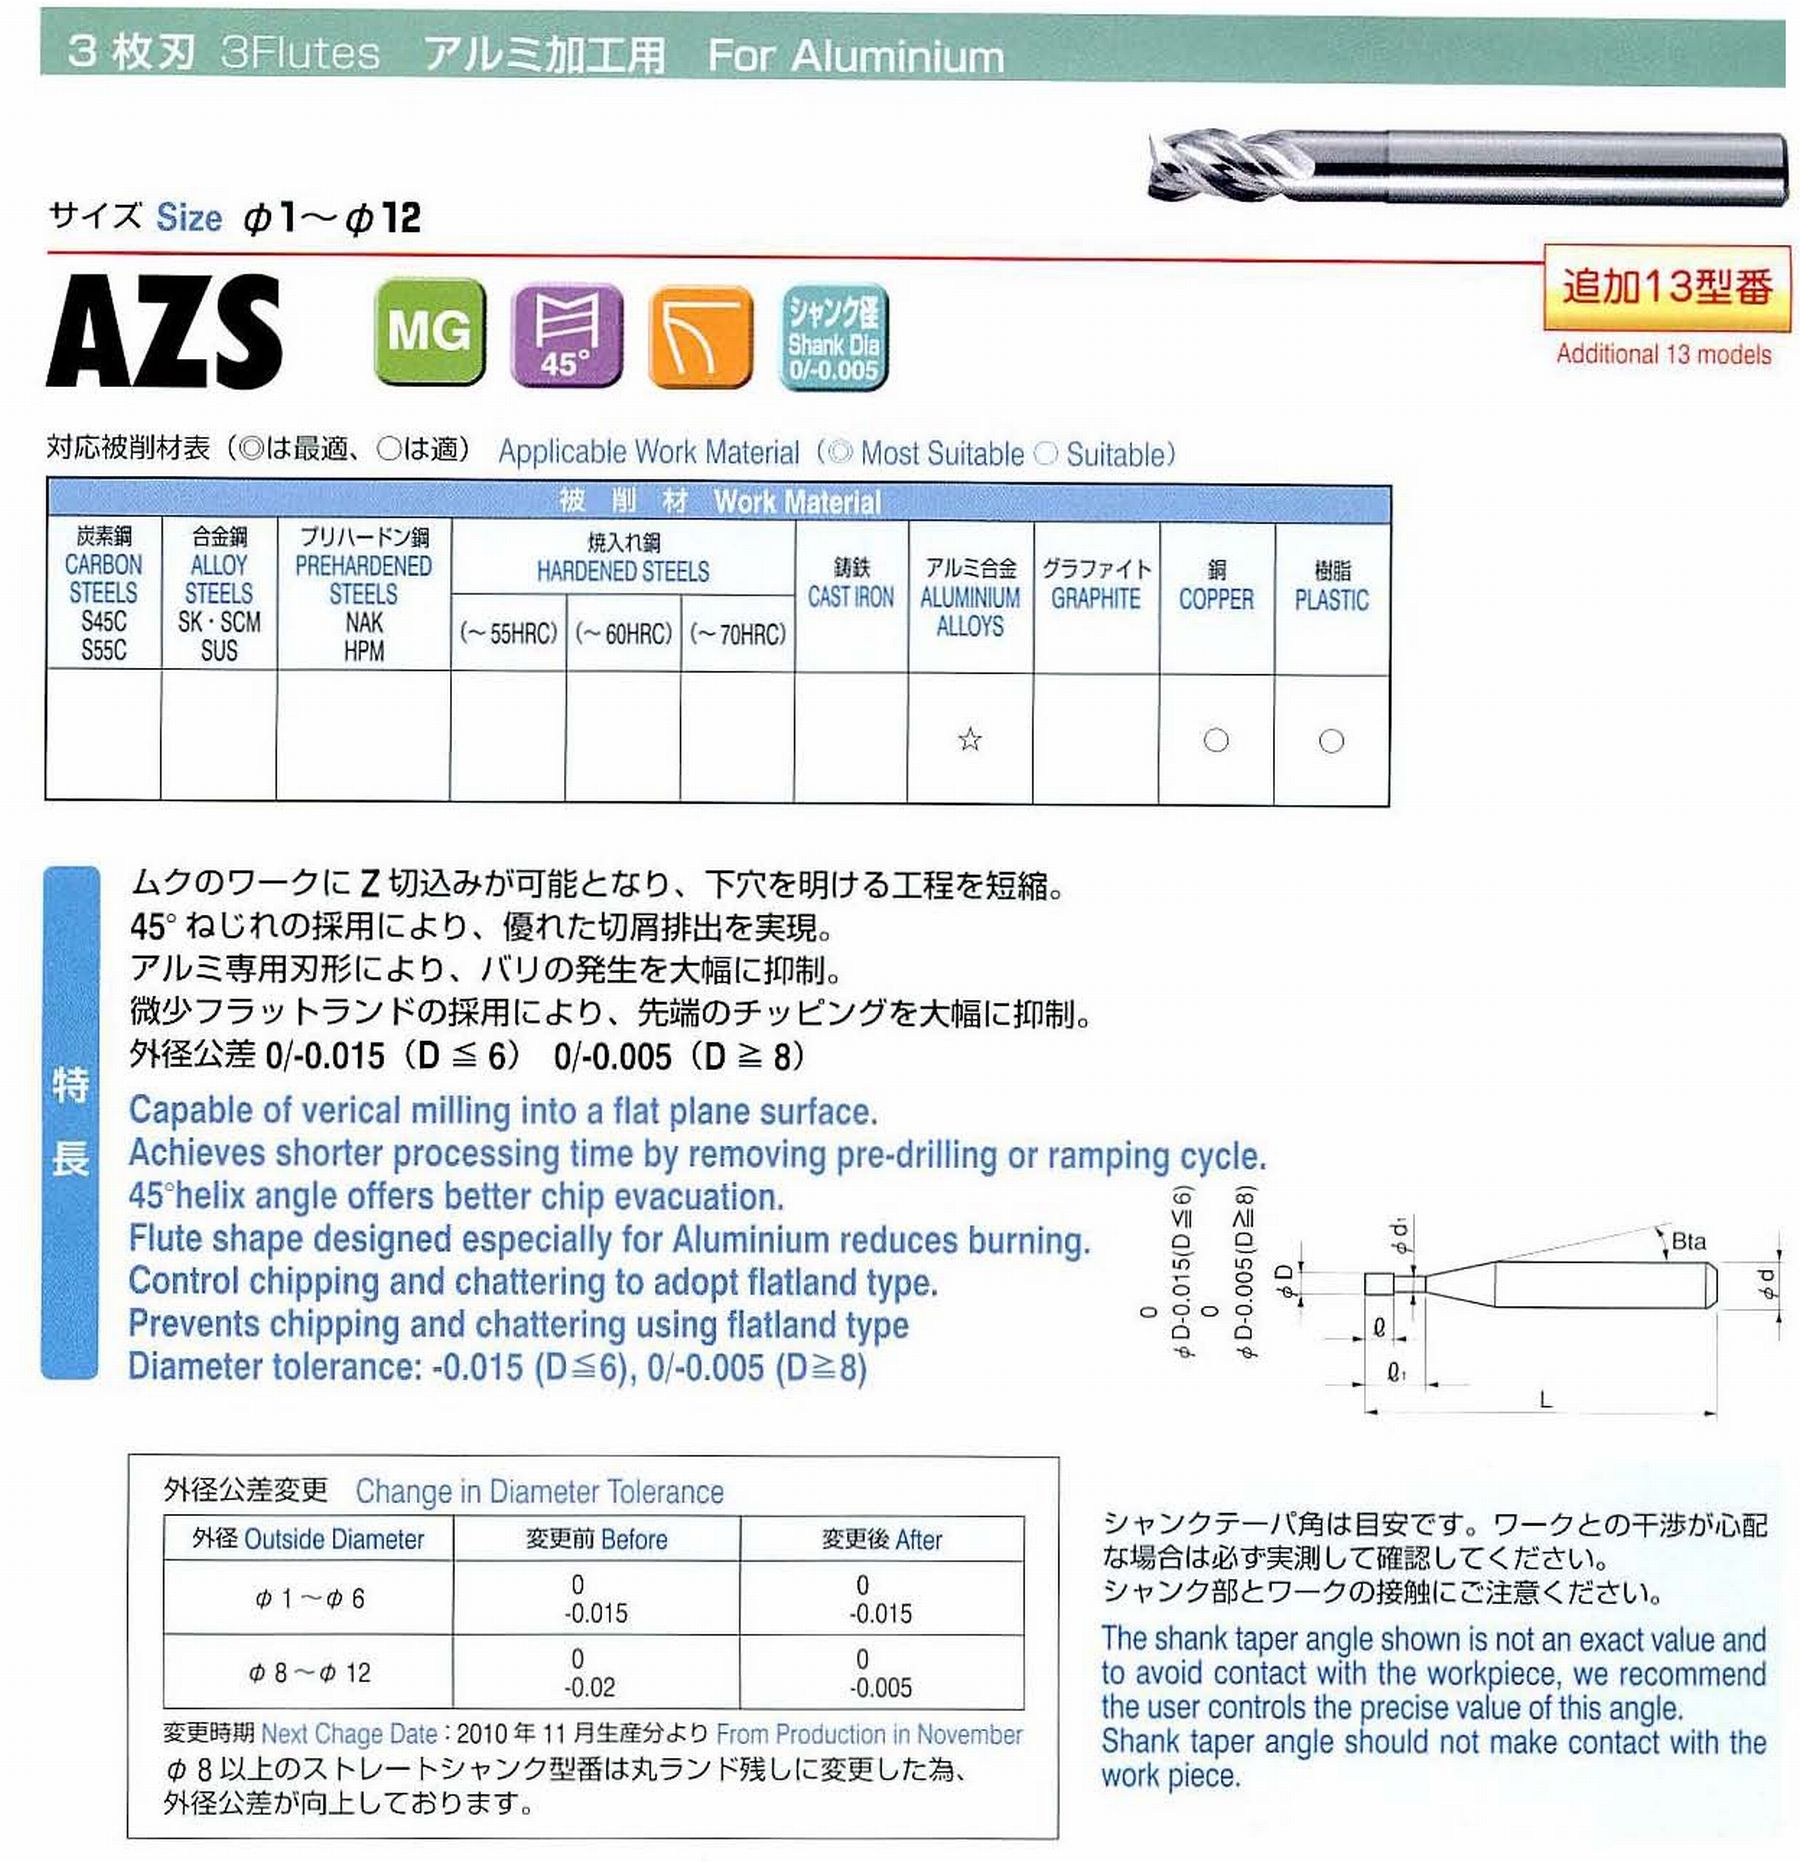 ユニオンツール 3枚刃 AZS3040-120 外径4 有効長12 刃長8 首径3.9 シャンクテーパ角16° 全長70 シャンク径6